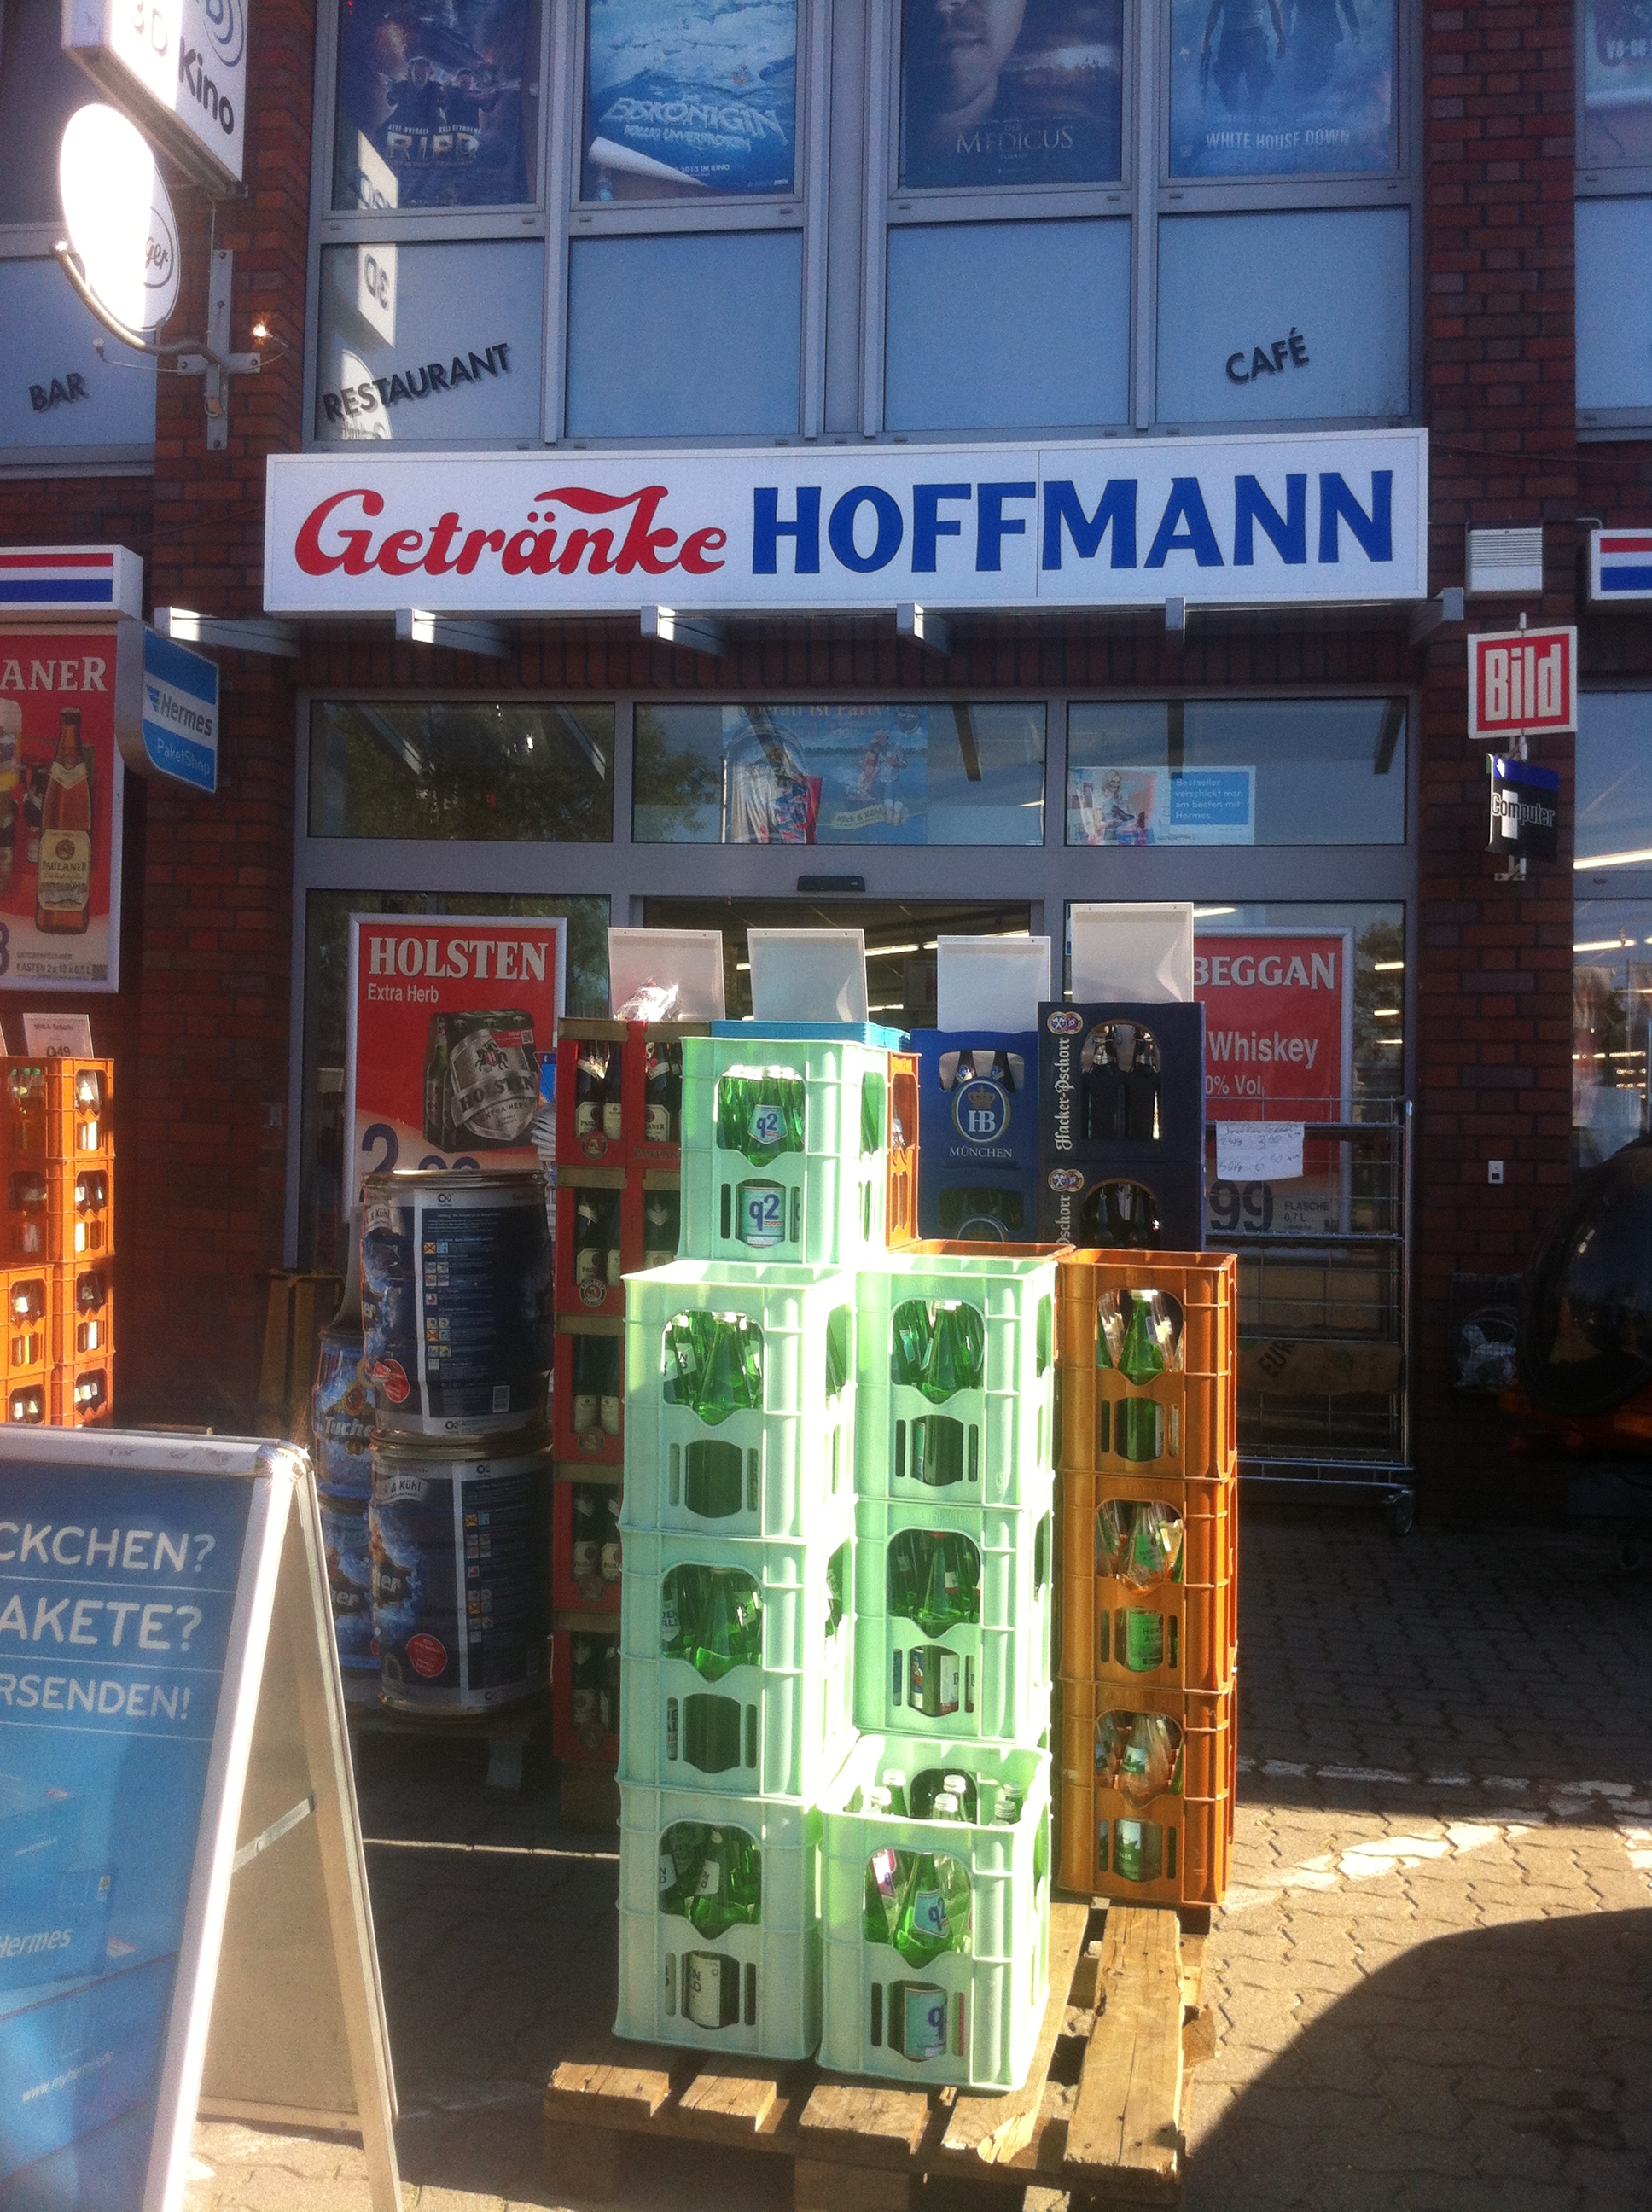 Getränke Hoffmann in Quickborn